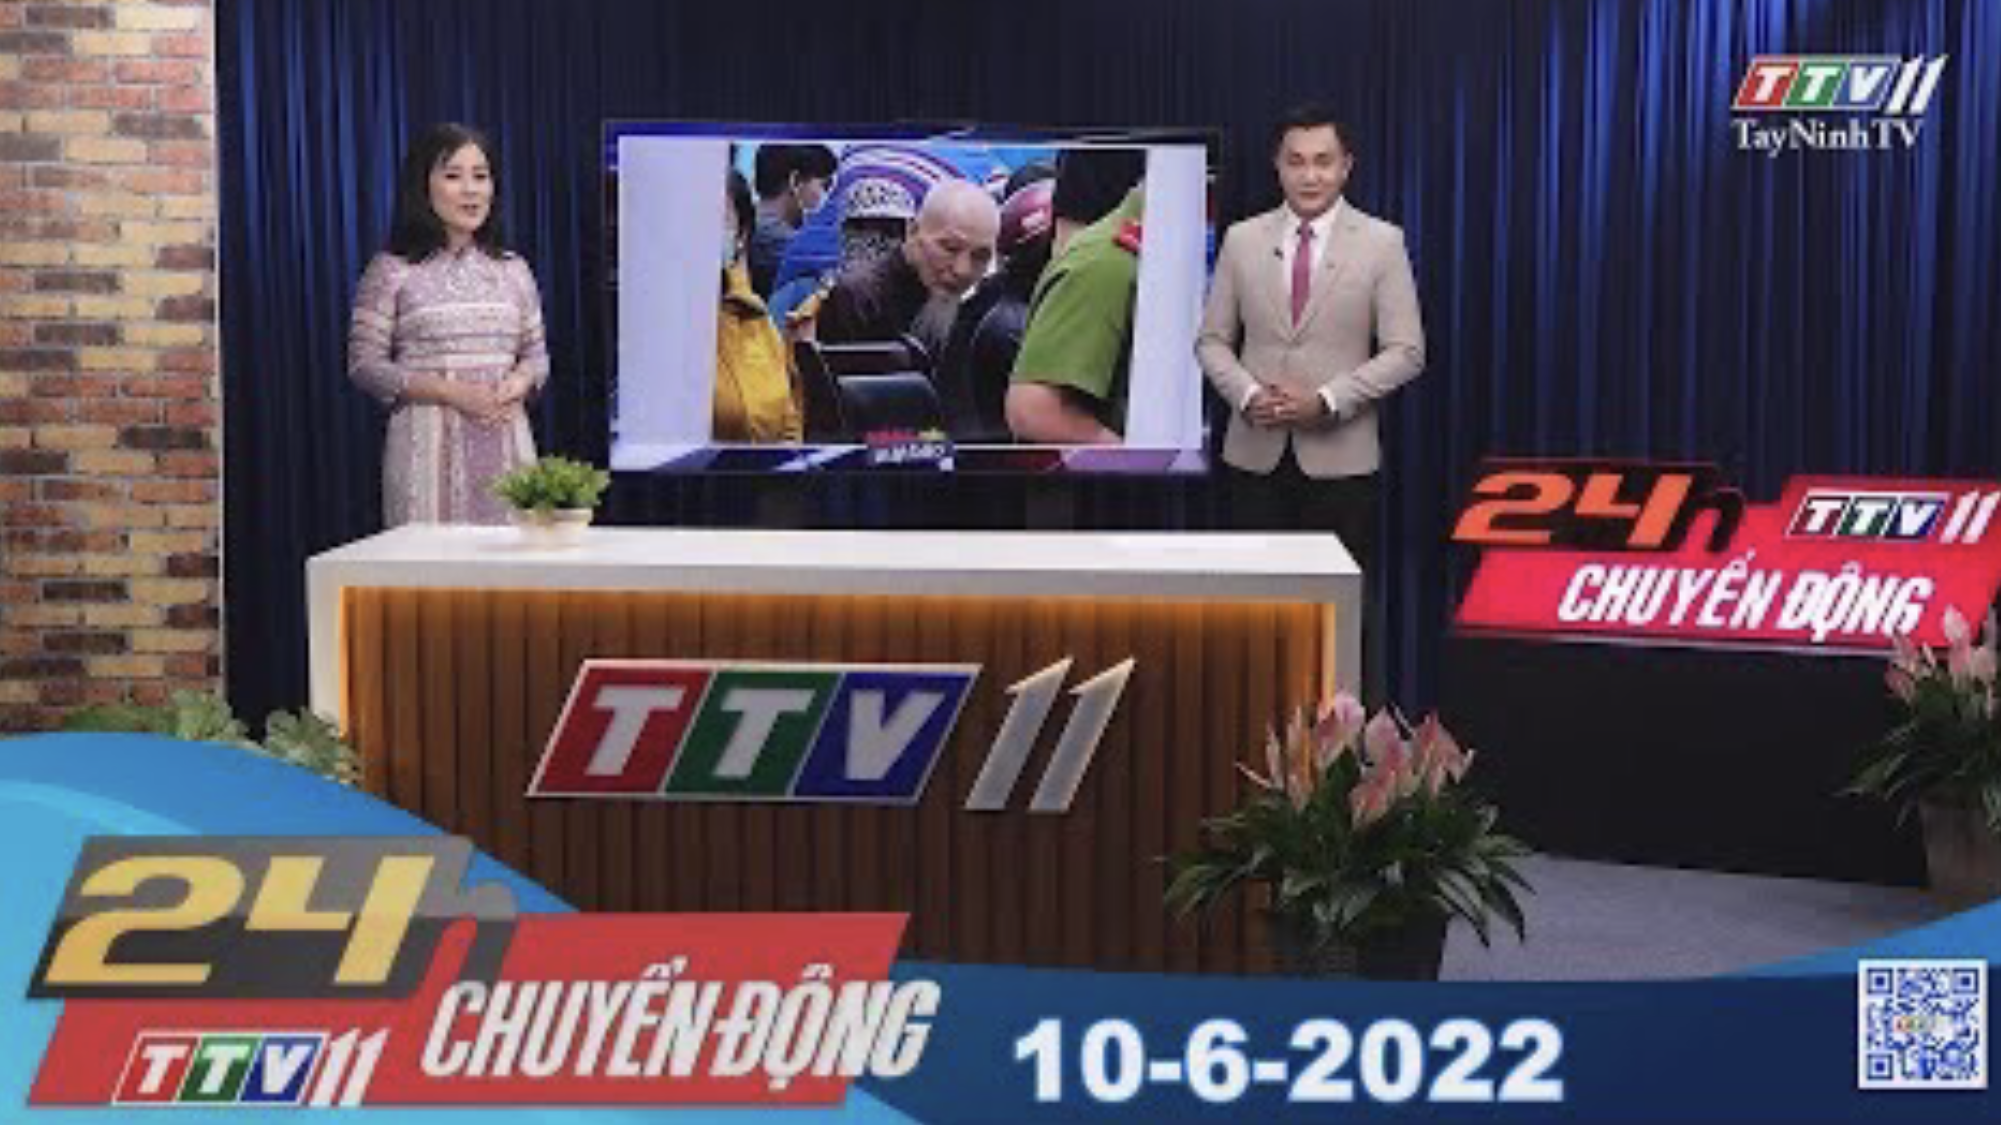 24h Chuyển động 10-6-2022 | Tin tức hôm nay | TayNinhTV